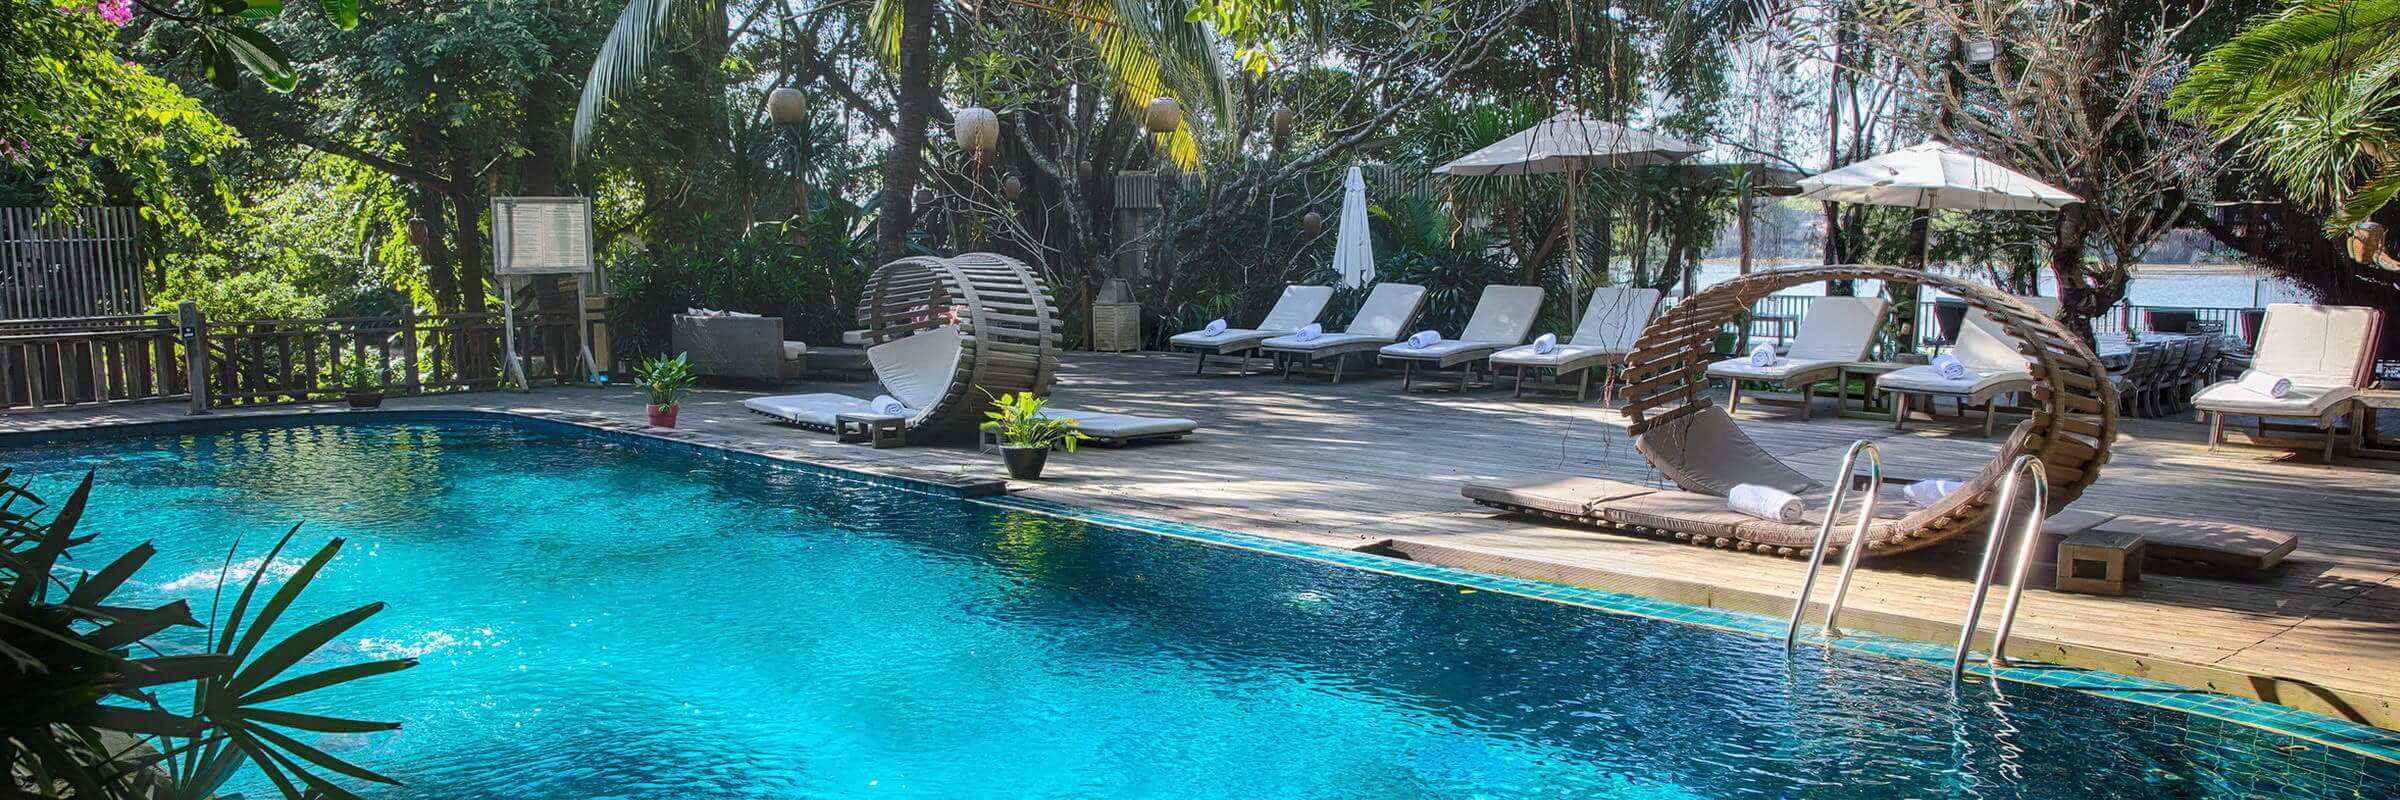 Der einladende Pool mit harmonischer Sonnenterasse des An Lam Retreats Saigon River Boutique-Hotel